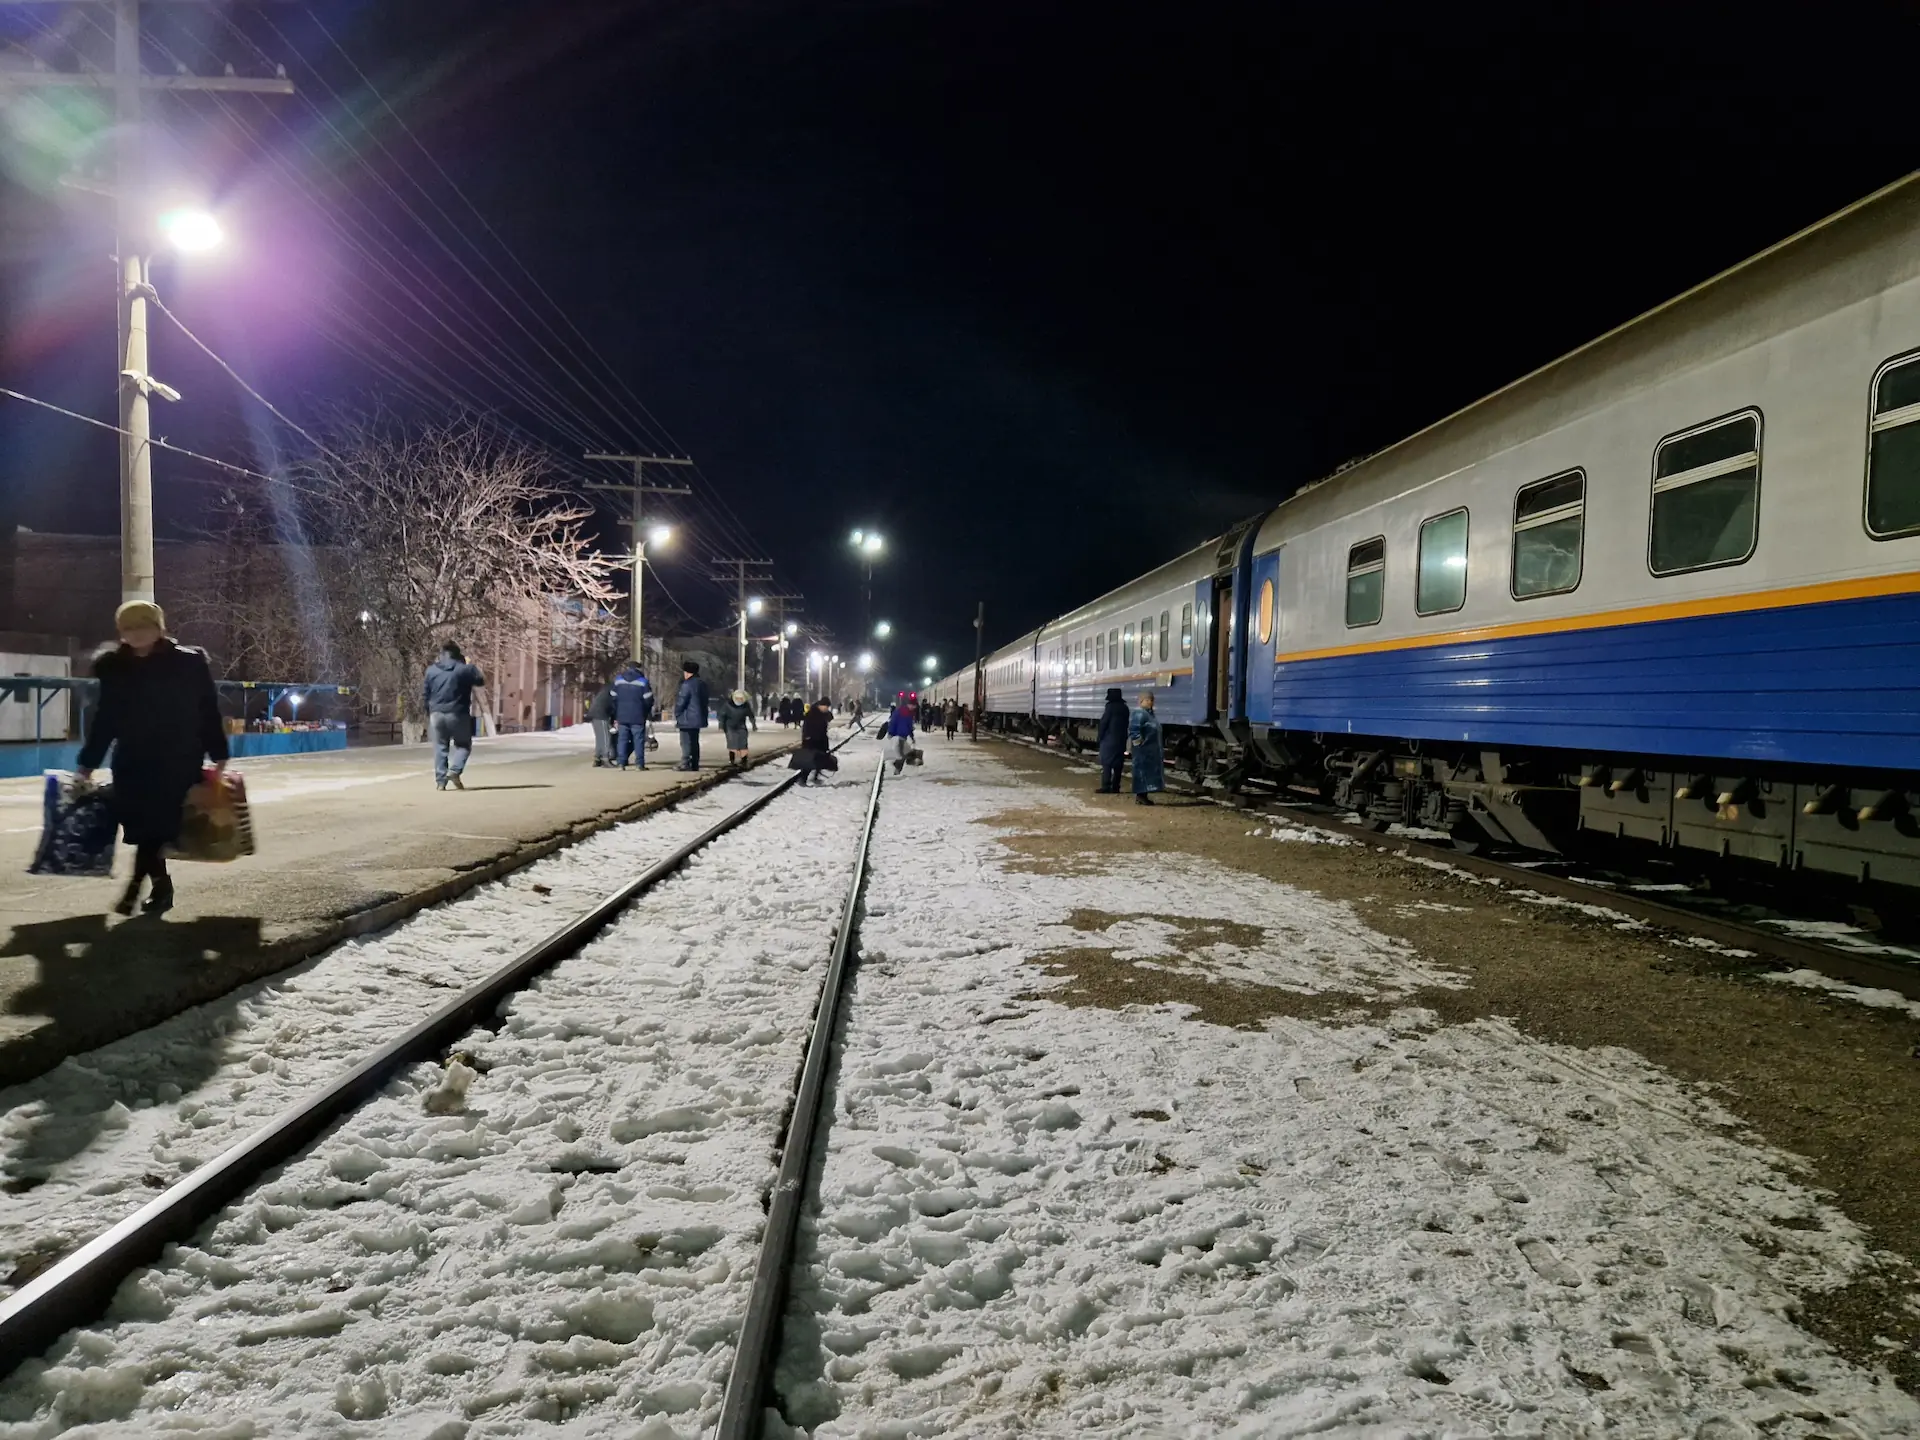 Il fait nuit, les gens traversent à pied des rails pour accéder à la voie où le train se trouve. Le sol et les rails sont couverts de neige. La lumière des lampadaires blanche éclaire fortement la gare.